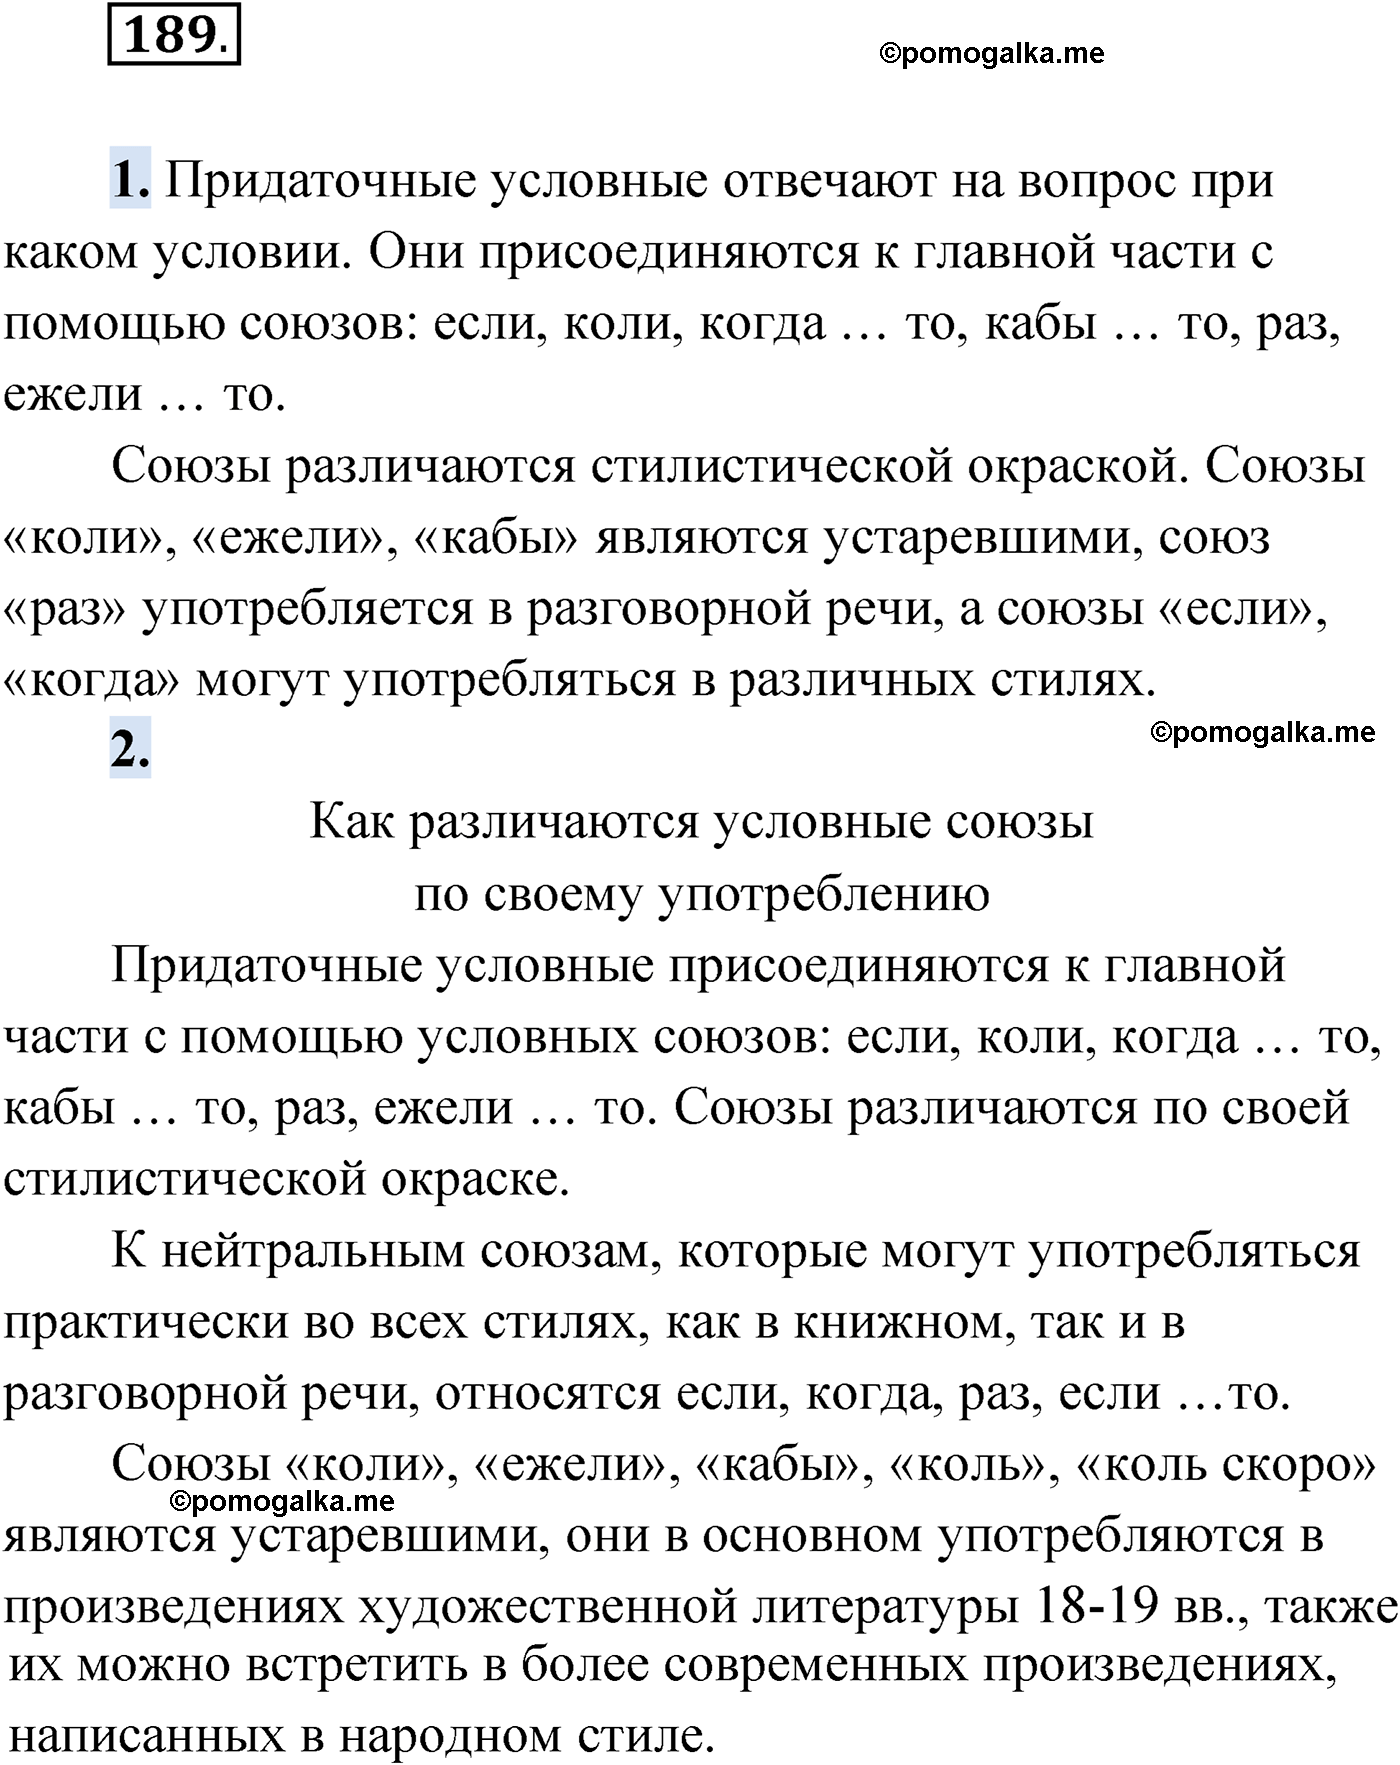 упражнение №189 русский язык 9 класс Мурина 2019 год